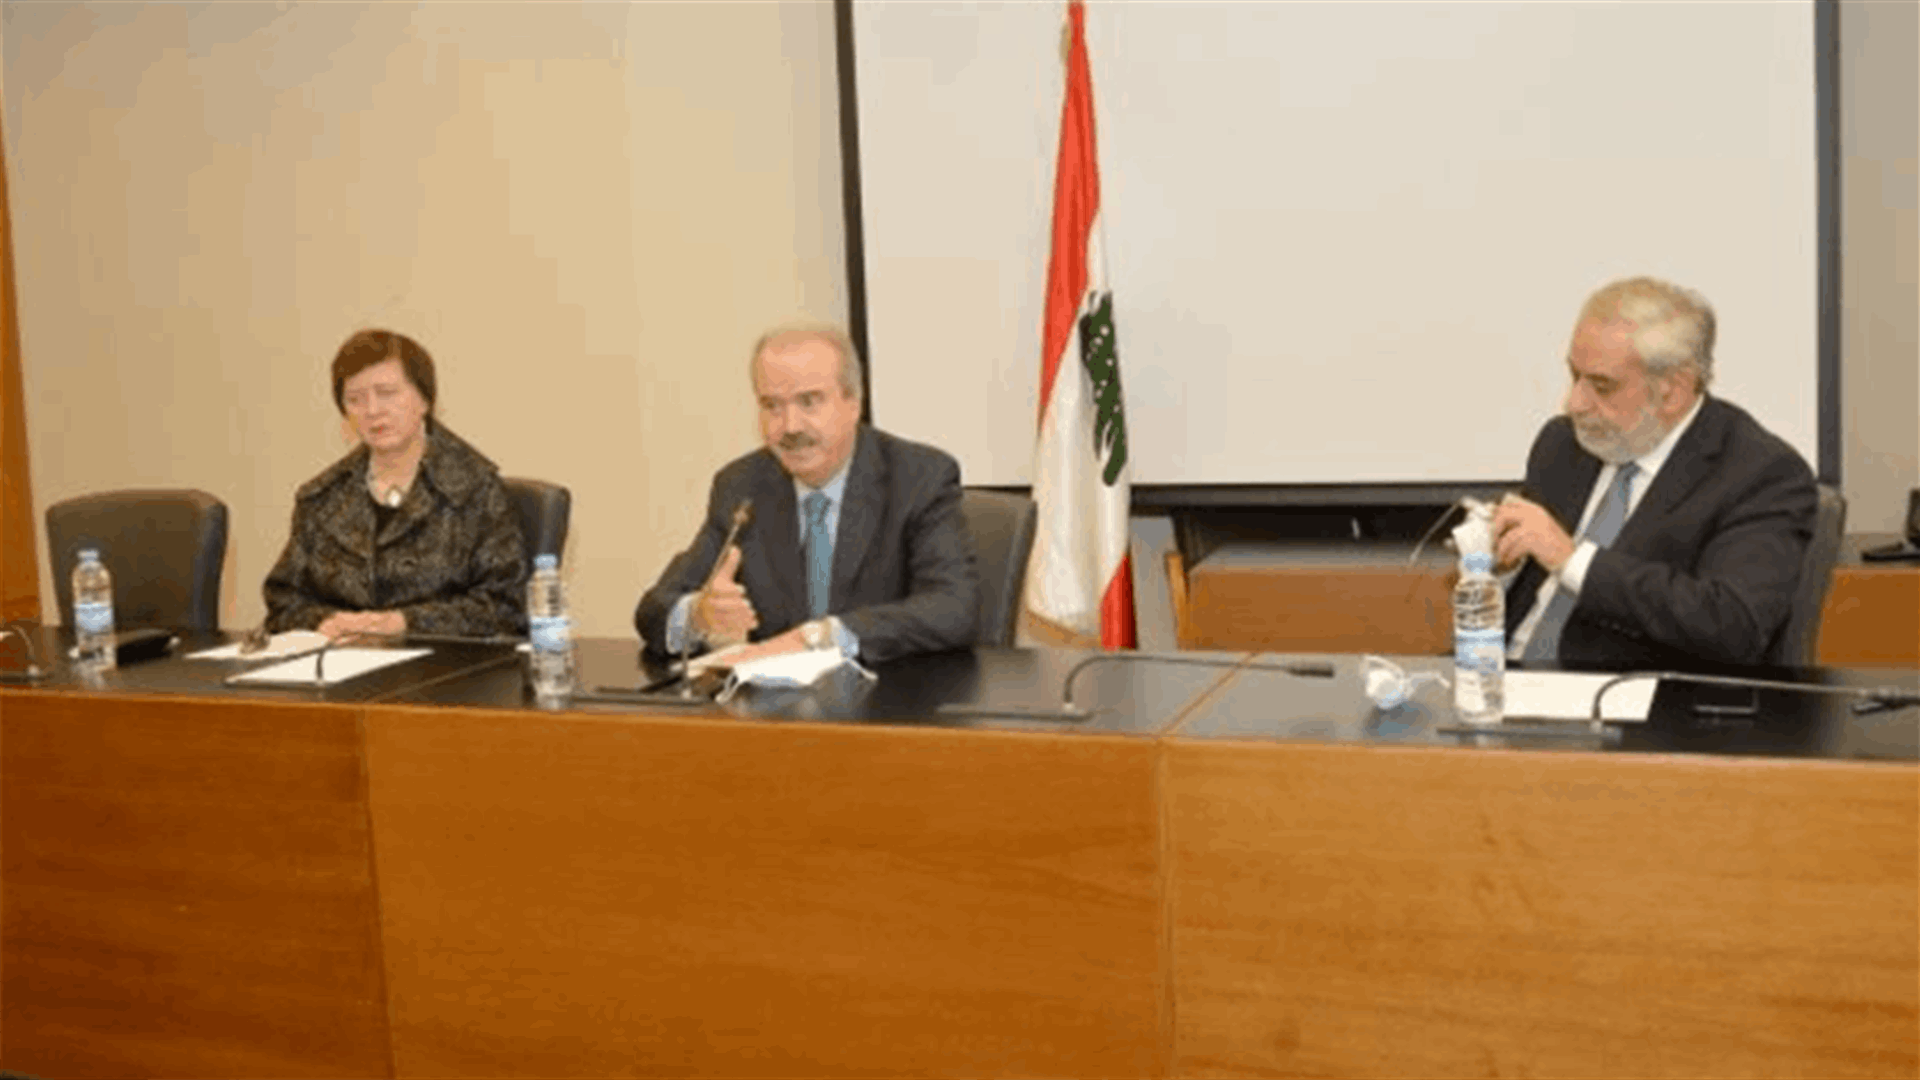 لجنة الشؤون الخارجية التقت فرونتسكا جابر: اكدنا احترام دور اليونيفيل والاحداث الفردية لا تعبر عن موقف لبنان الرسمي